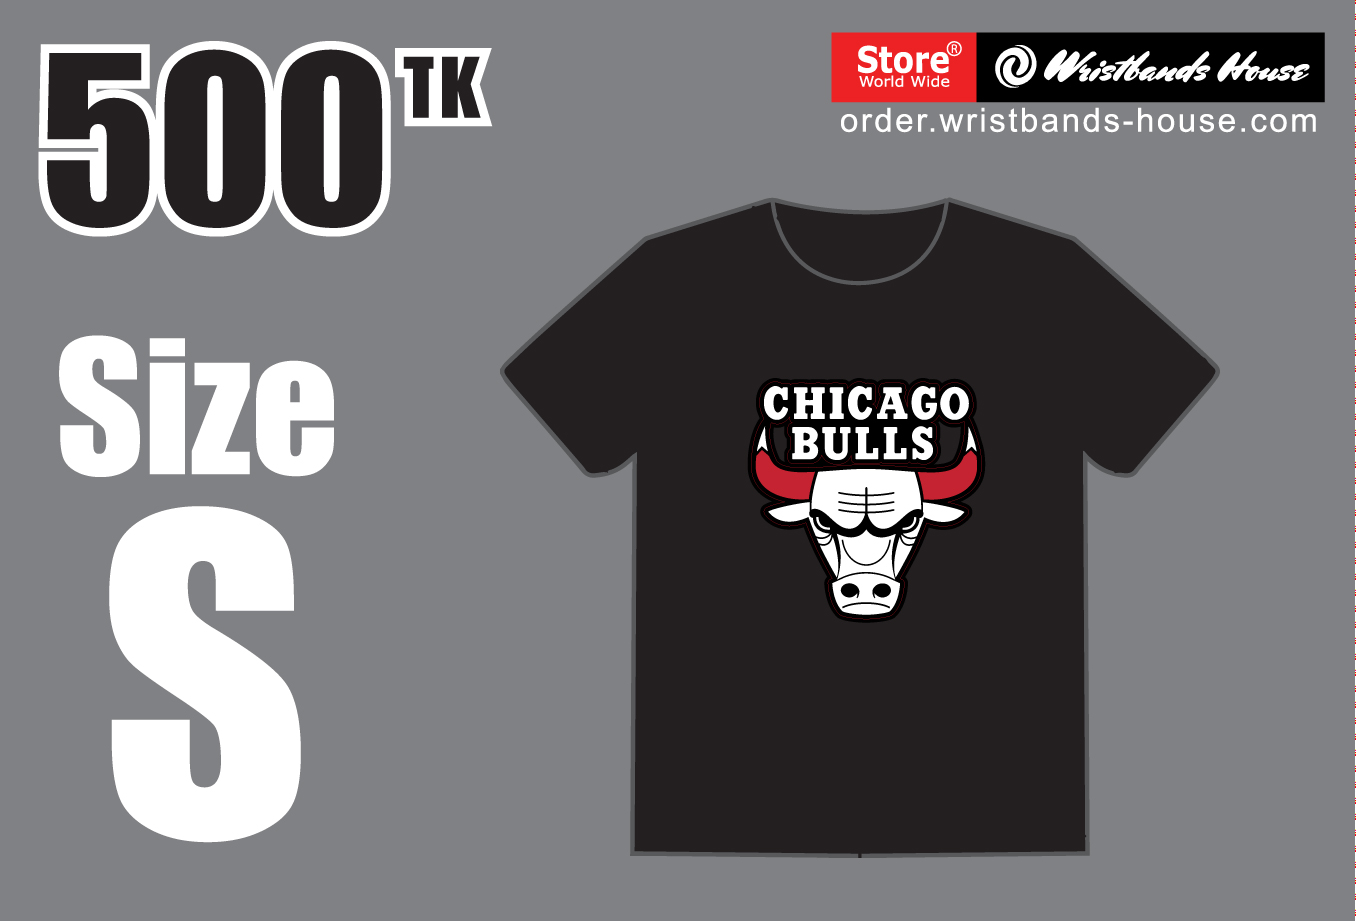 Chicago Bulls- S